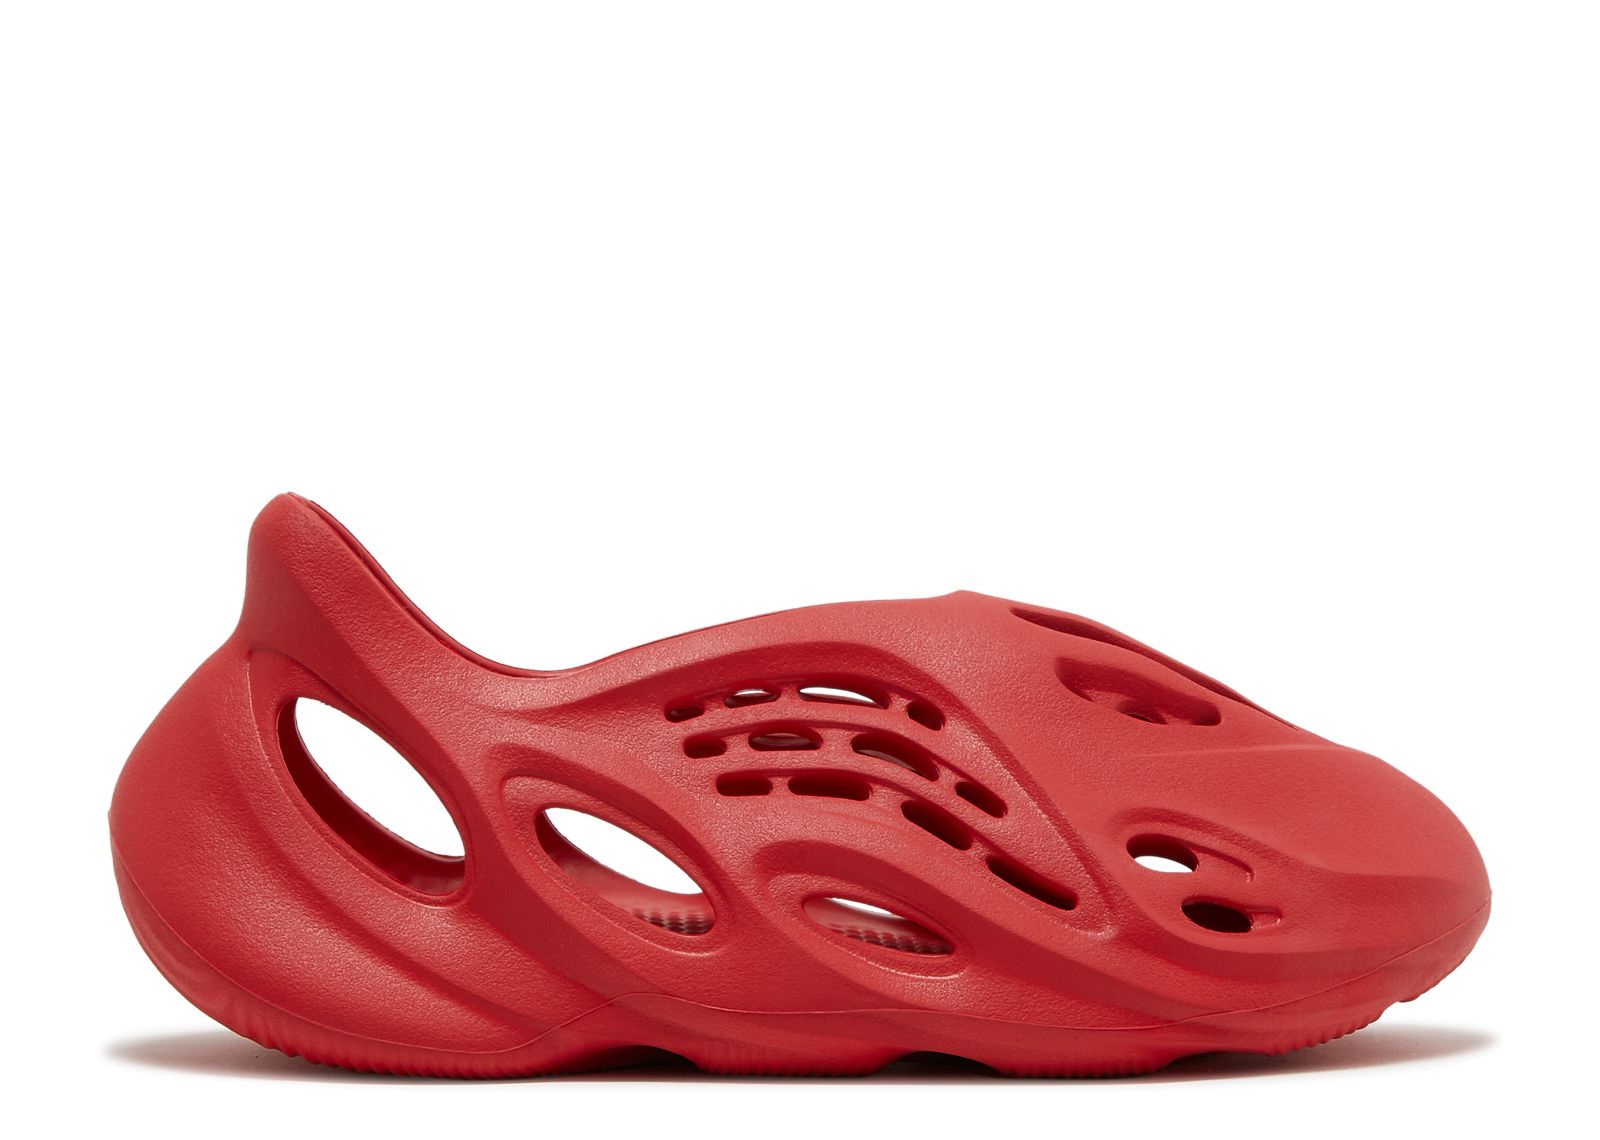 Кроссовки adidas Yeezy Foam Runner 'Vermilion', красный